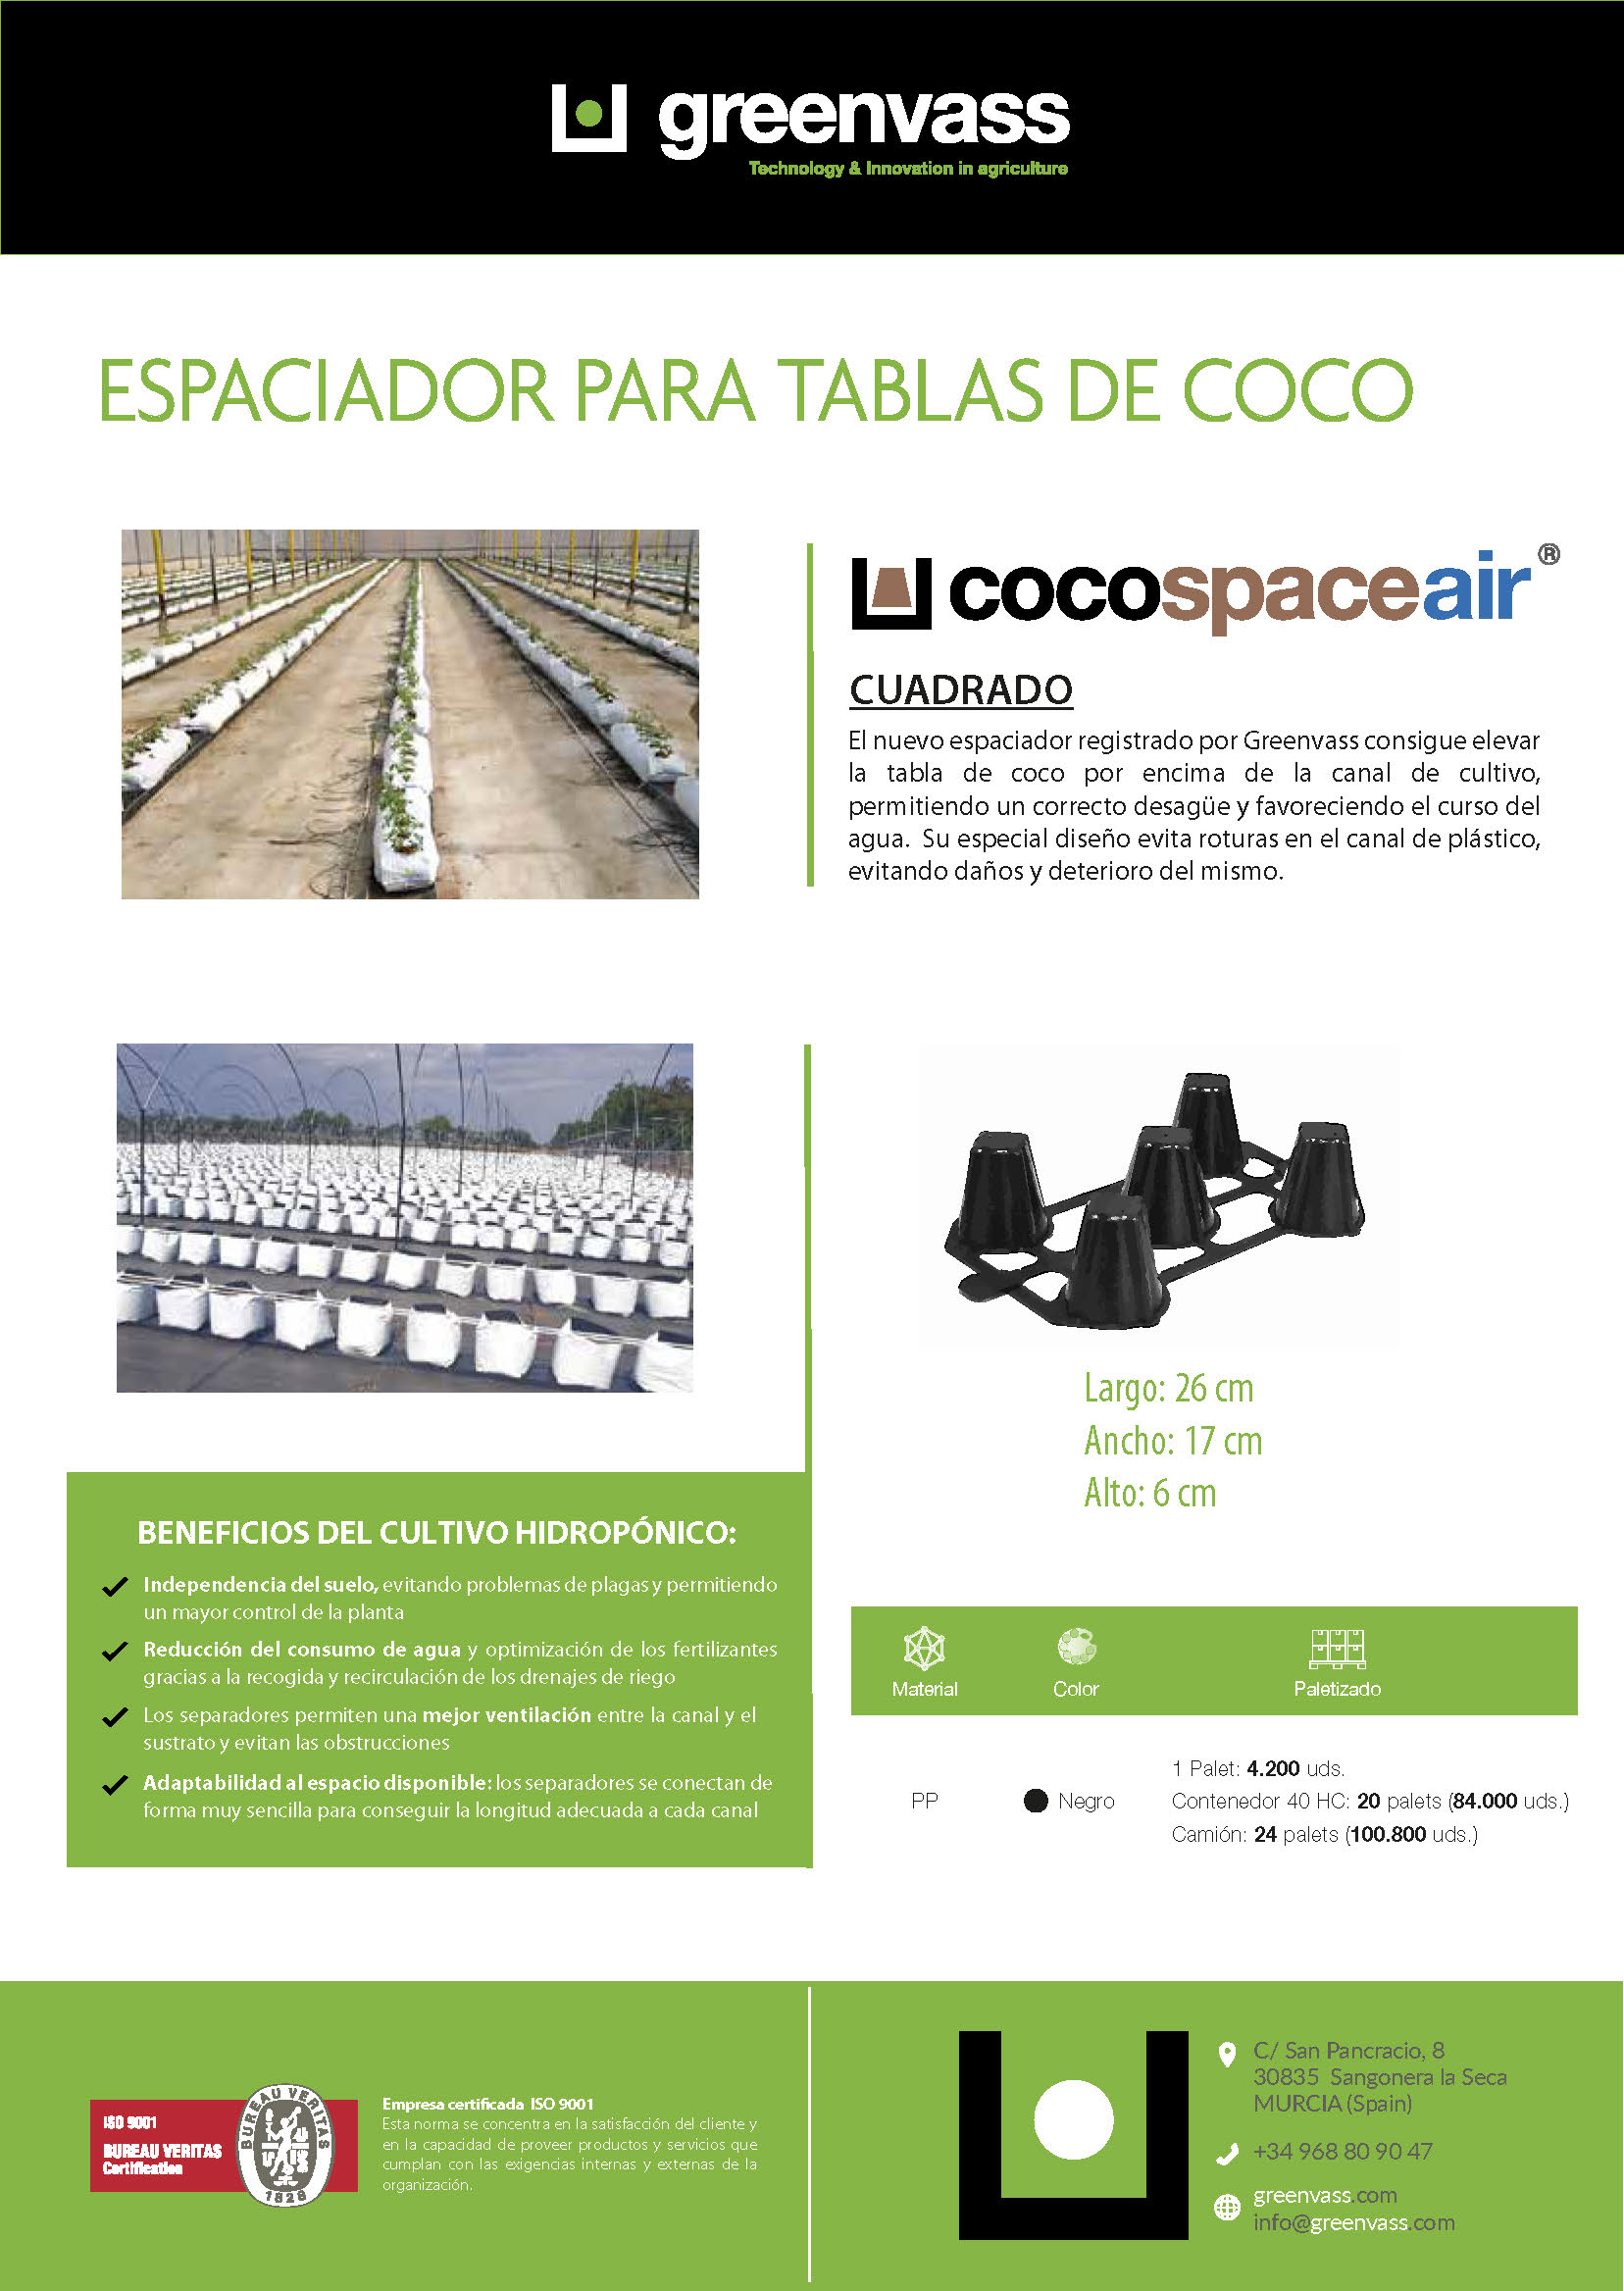 CocospaceAir cuadrado